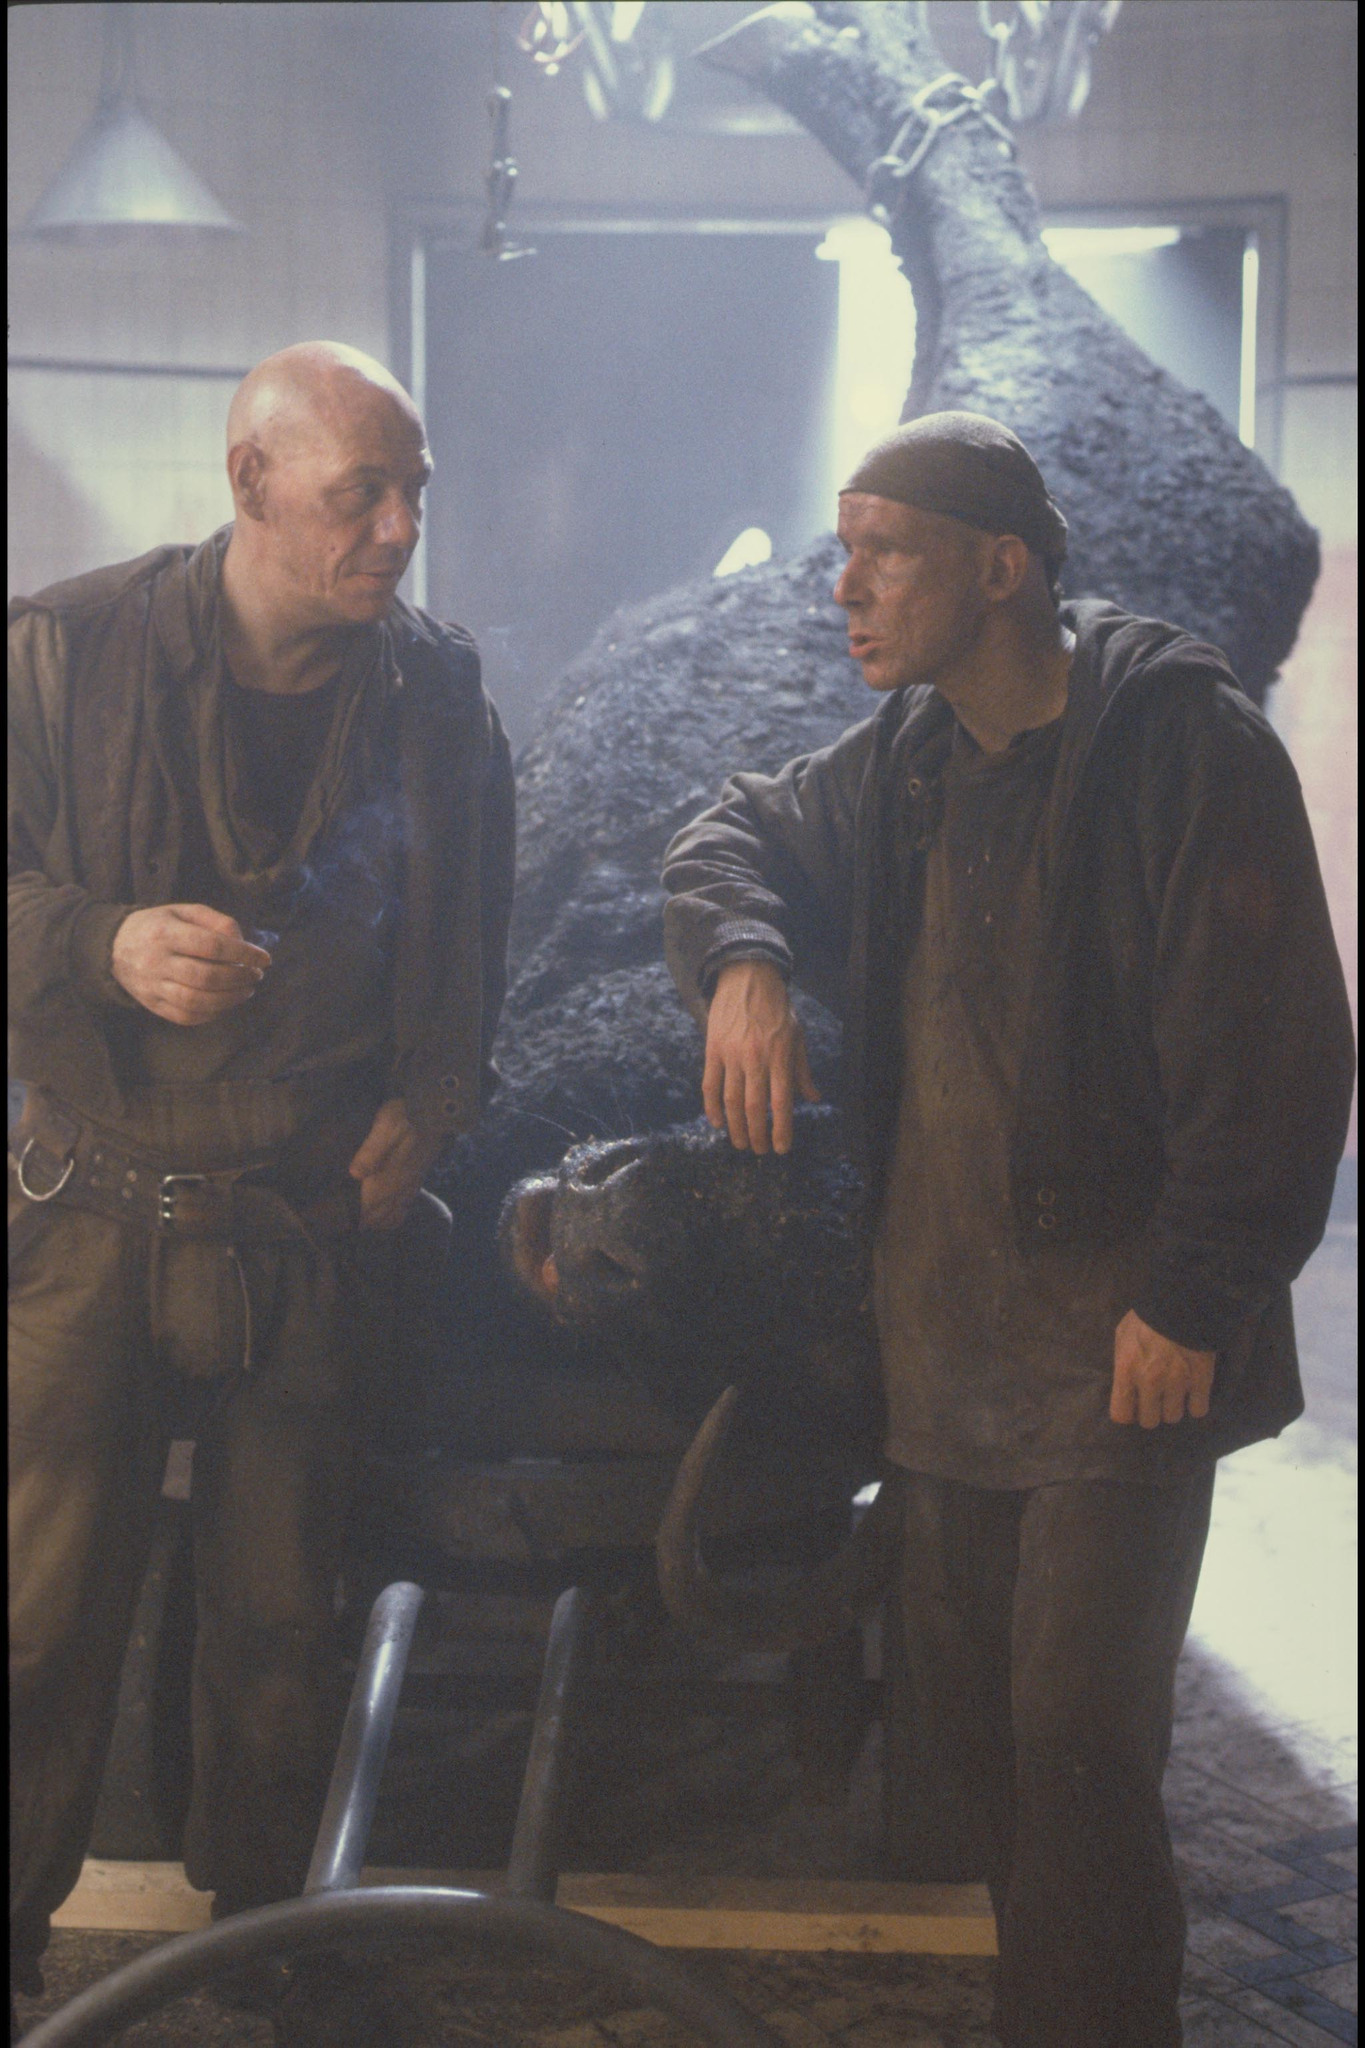 Still of Christopher Fairbank and Peter Guinness in Svetimas 3 (1992)